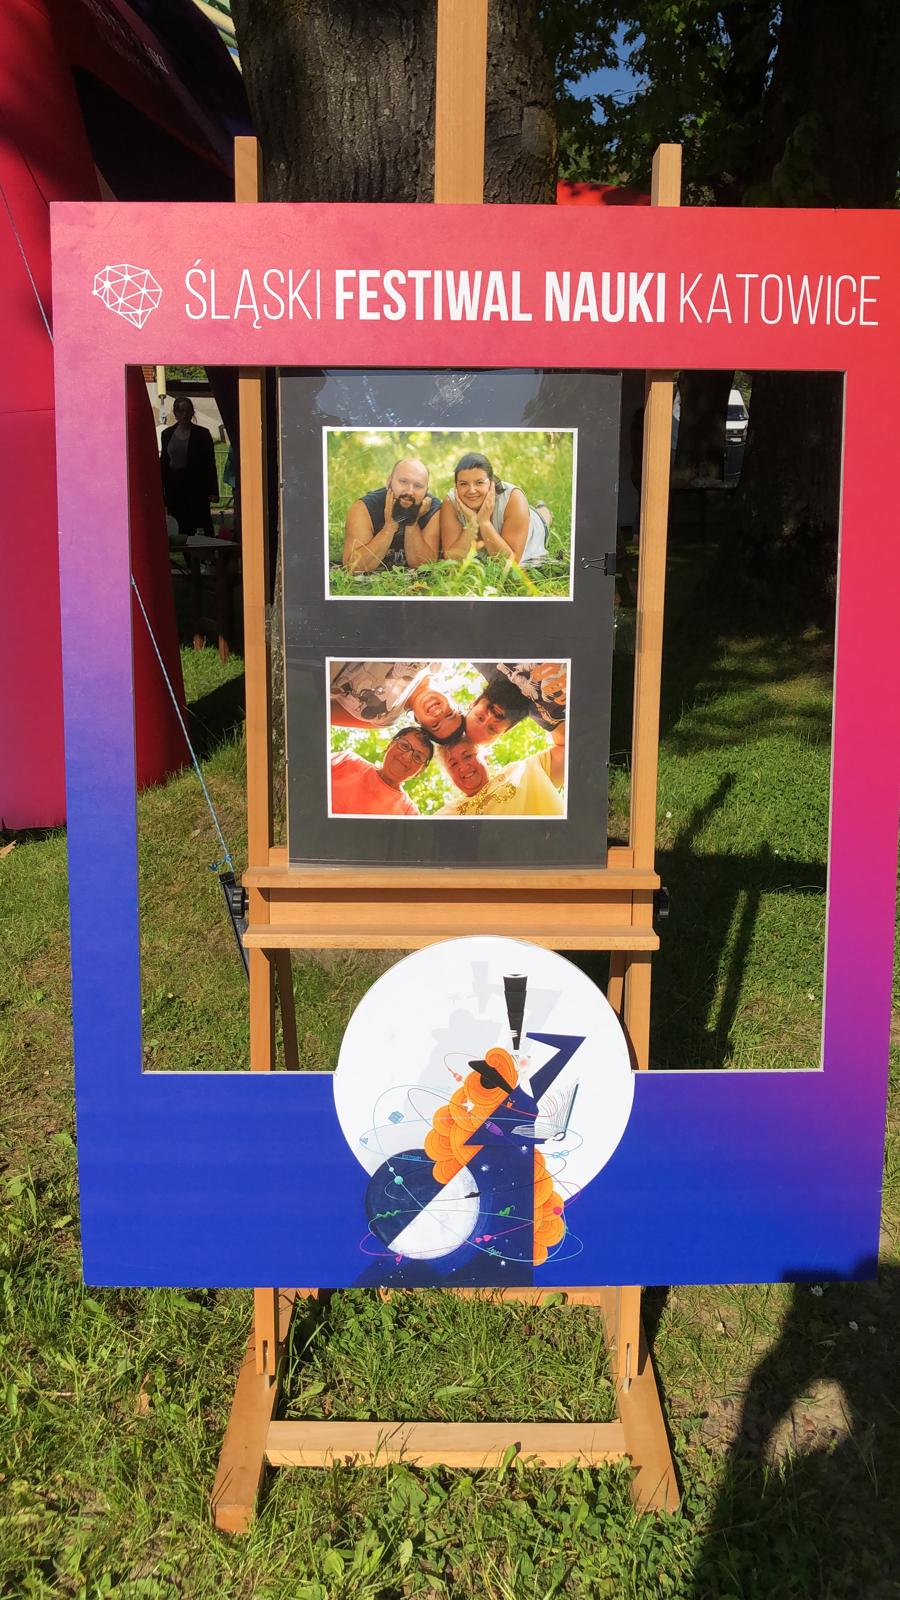 Ramka Sląskiego Festiwalu nauki, w środku sztaluga ze zdjęciami ( 1 zdjecie para leżaca na kocu, drugie zdjęcie rodzina stykajac sie głowami patrzy w dół gdzie jest umieszczony aparat)